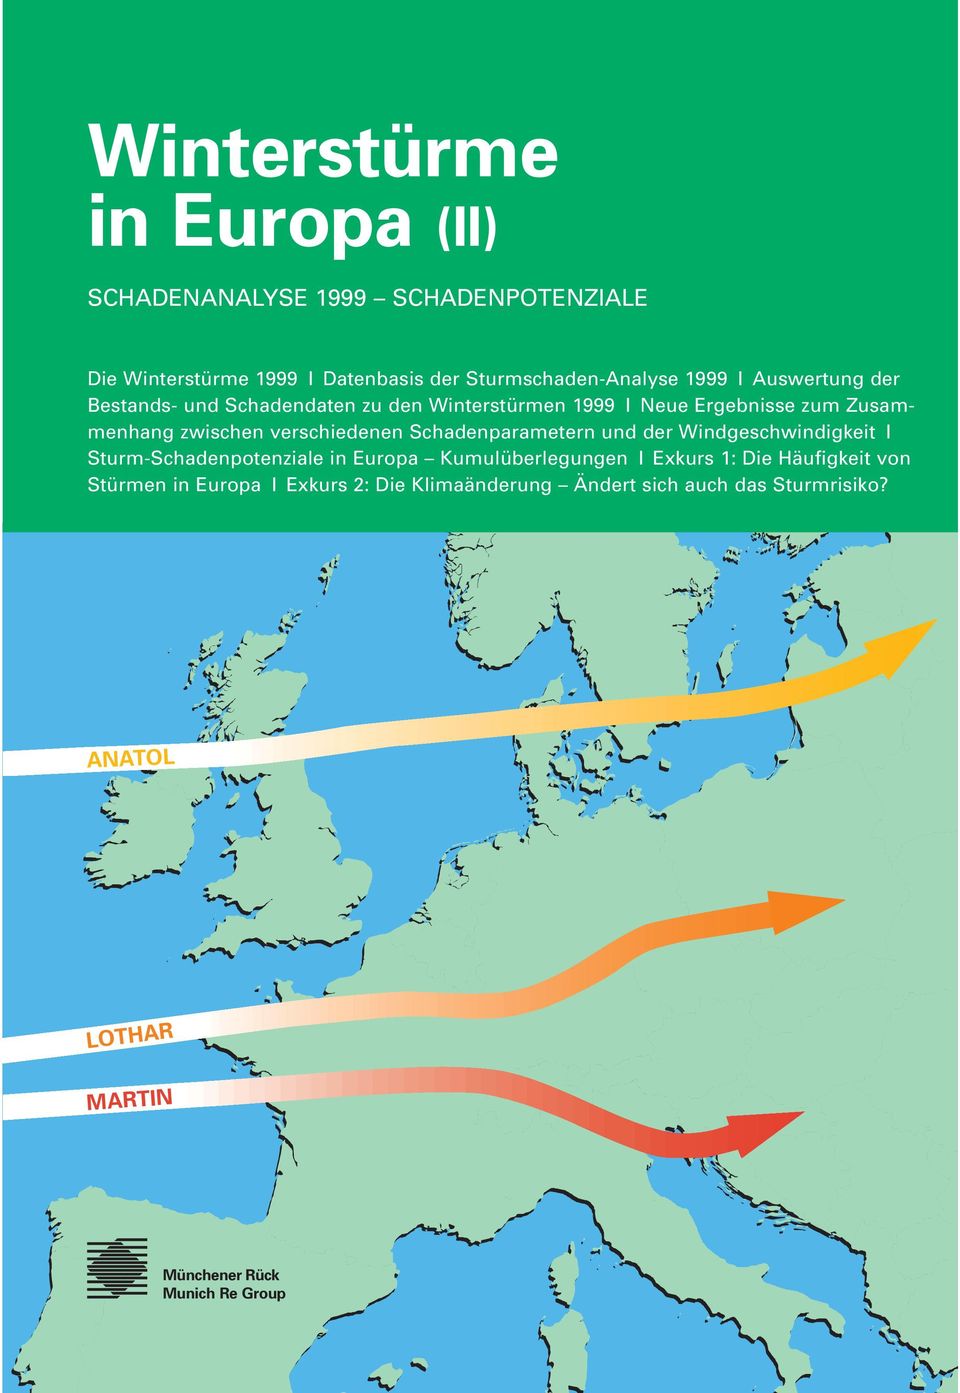 Schadenparametern und der Windgeschwindigkeit I Sturm-Schadenpotenziale in Europa Kumulüberlegungen I Exkurs 1: Die Häufigkeit von